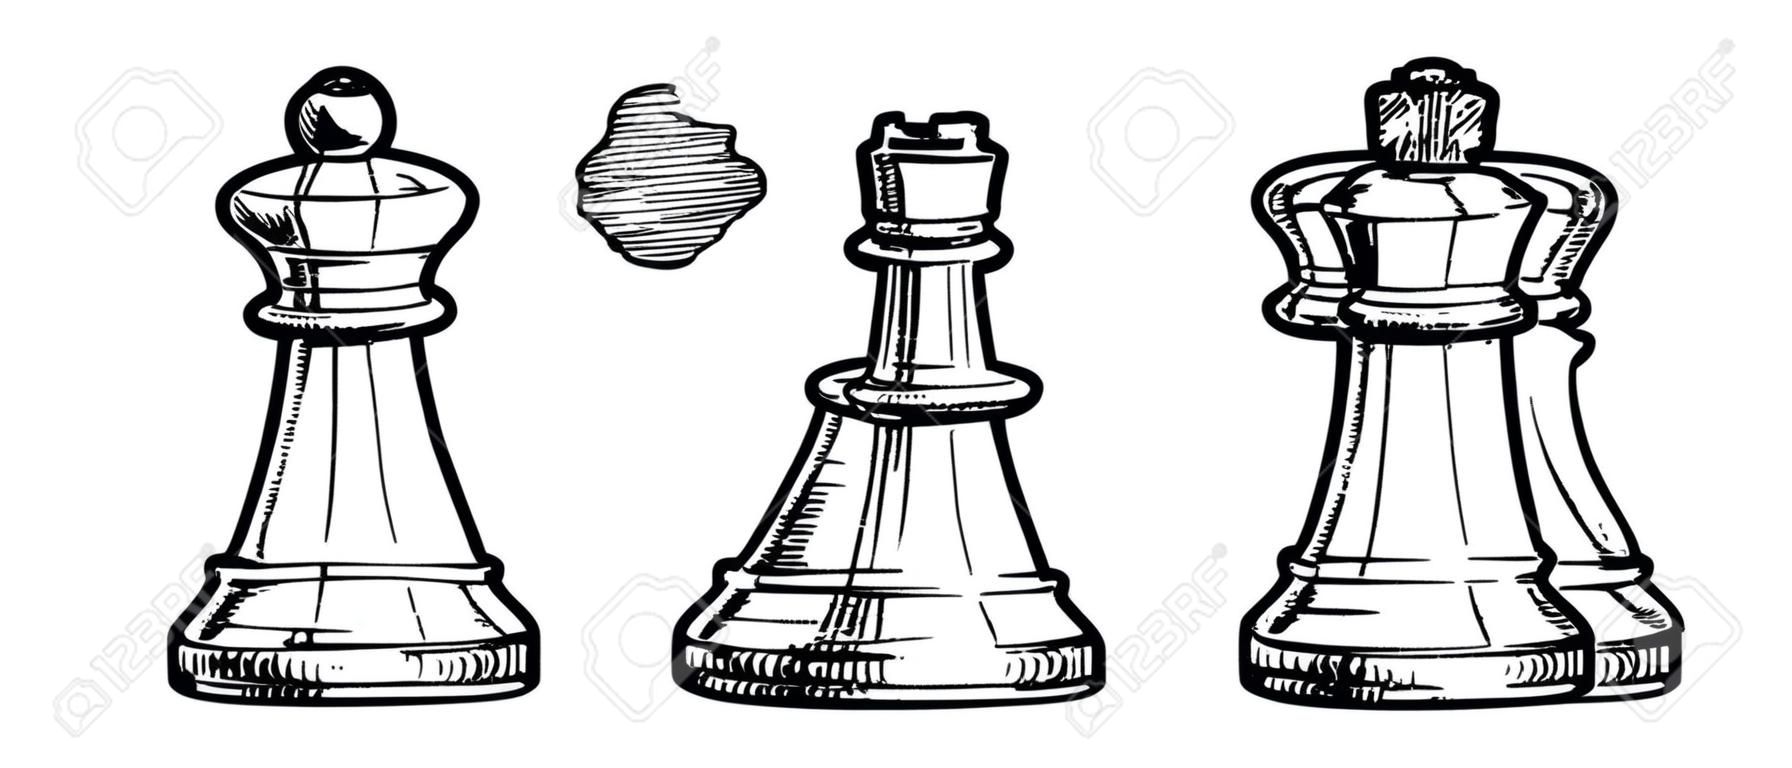 Vector ilustración en blanco y negro de ajedrez estilizado como grabado